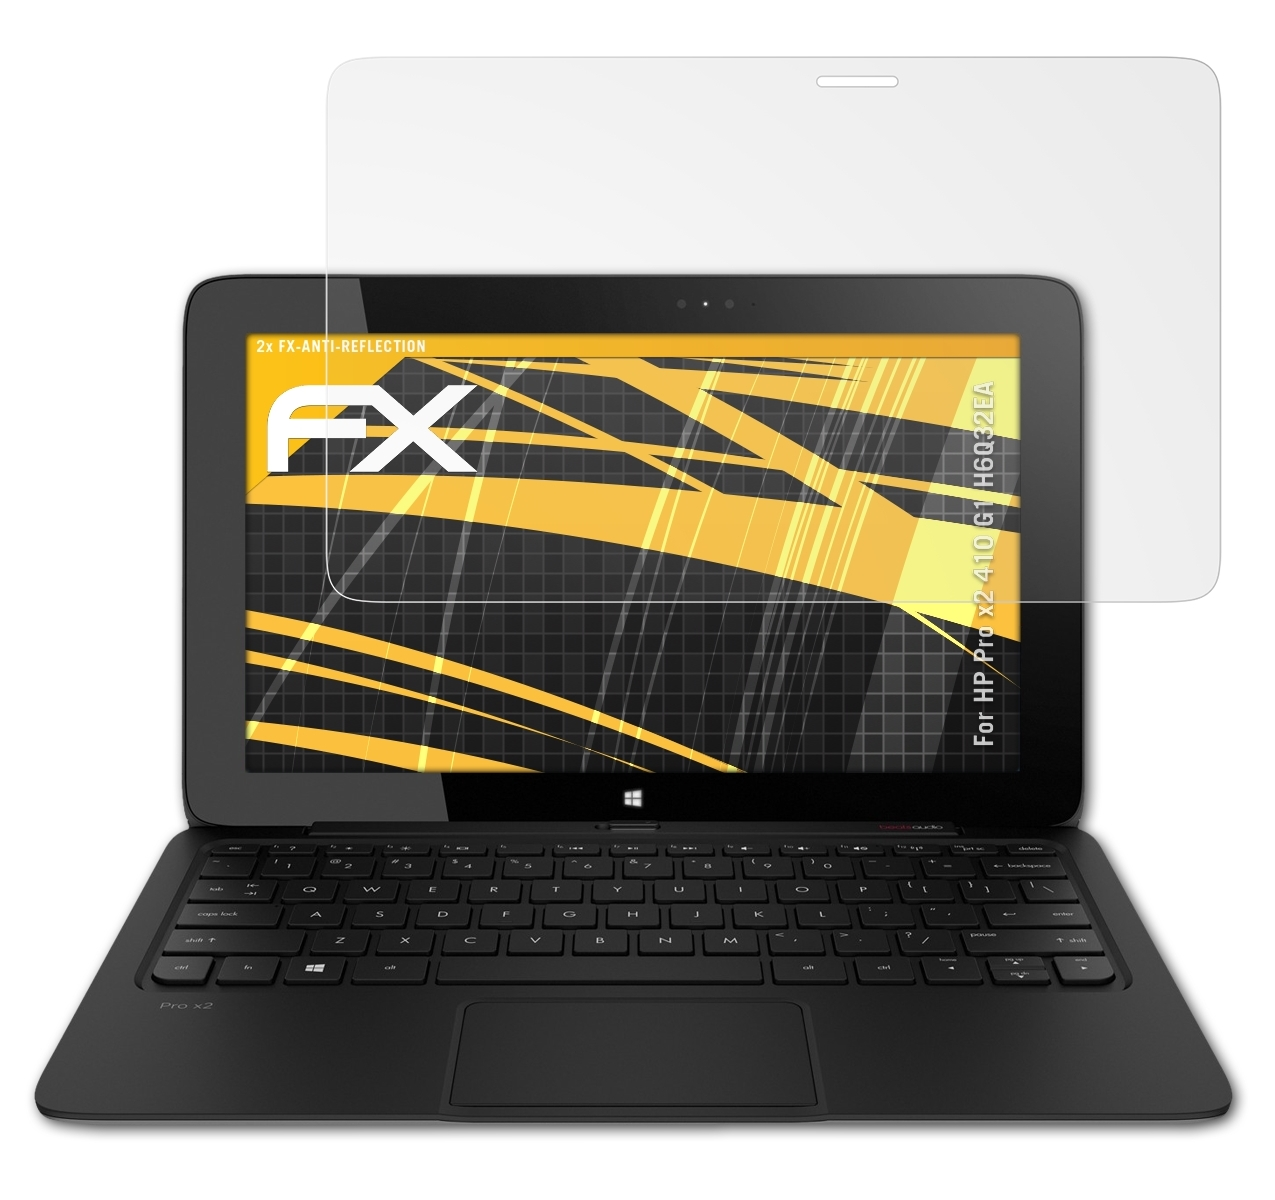 ATFOLIX 2x FX-Antireflex Displayschutz(für HP 410 (H6Q32EA)) x2 Pro G1